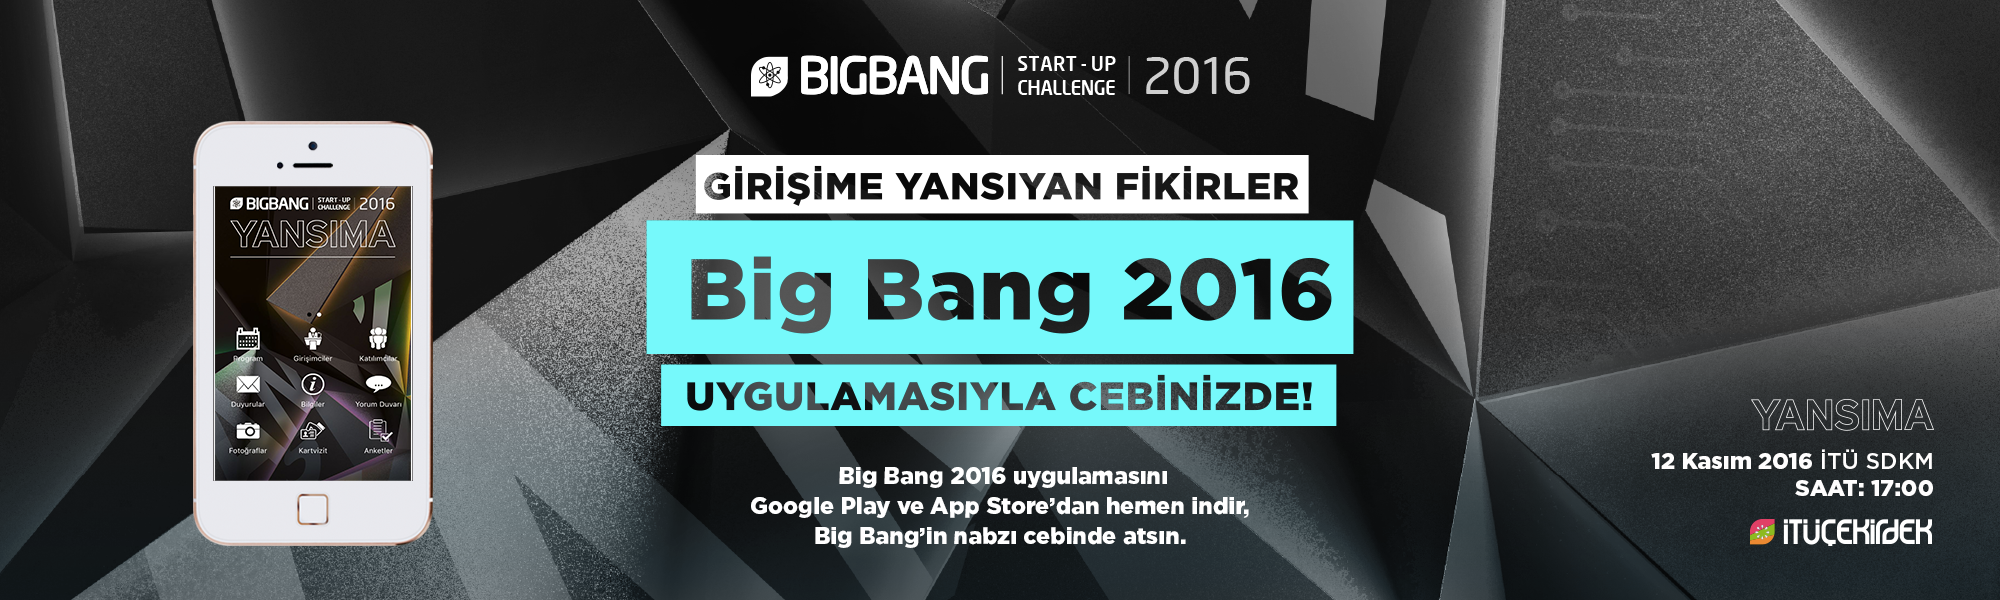 big bang 2016 mobi̇l uygulamasi çikti! 4